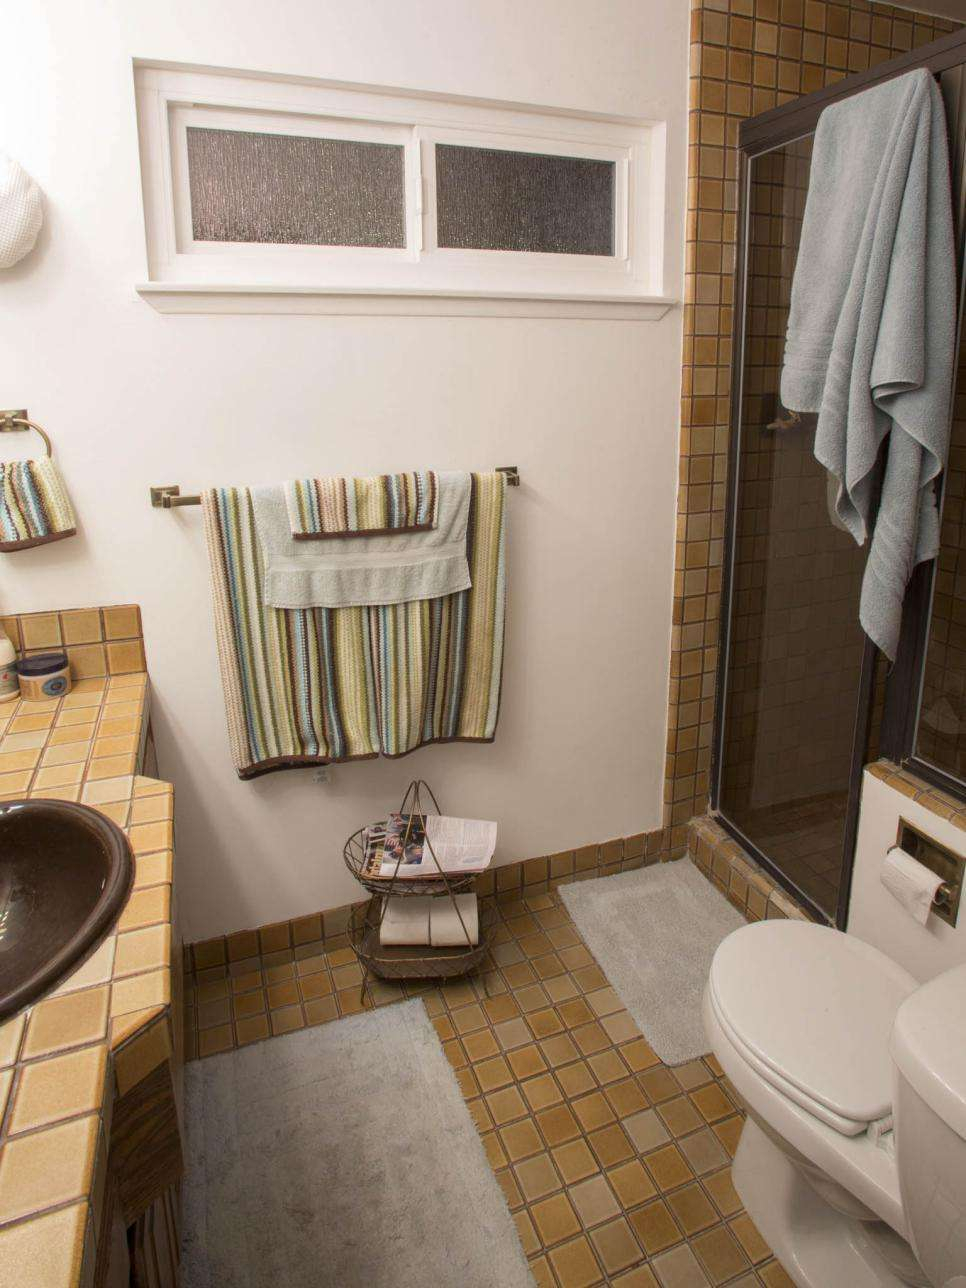 Σχεδιάστε ιδέες για ένα μικρό μπάνιο σε εξοχική κατοικία